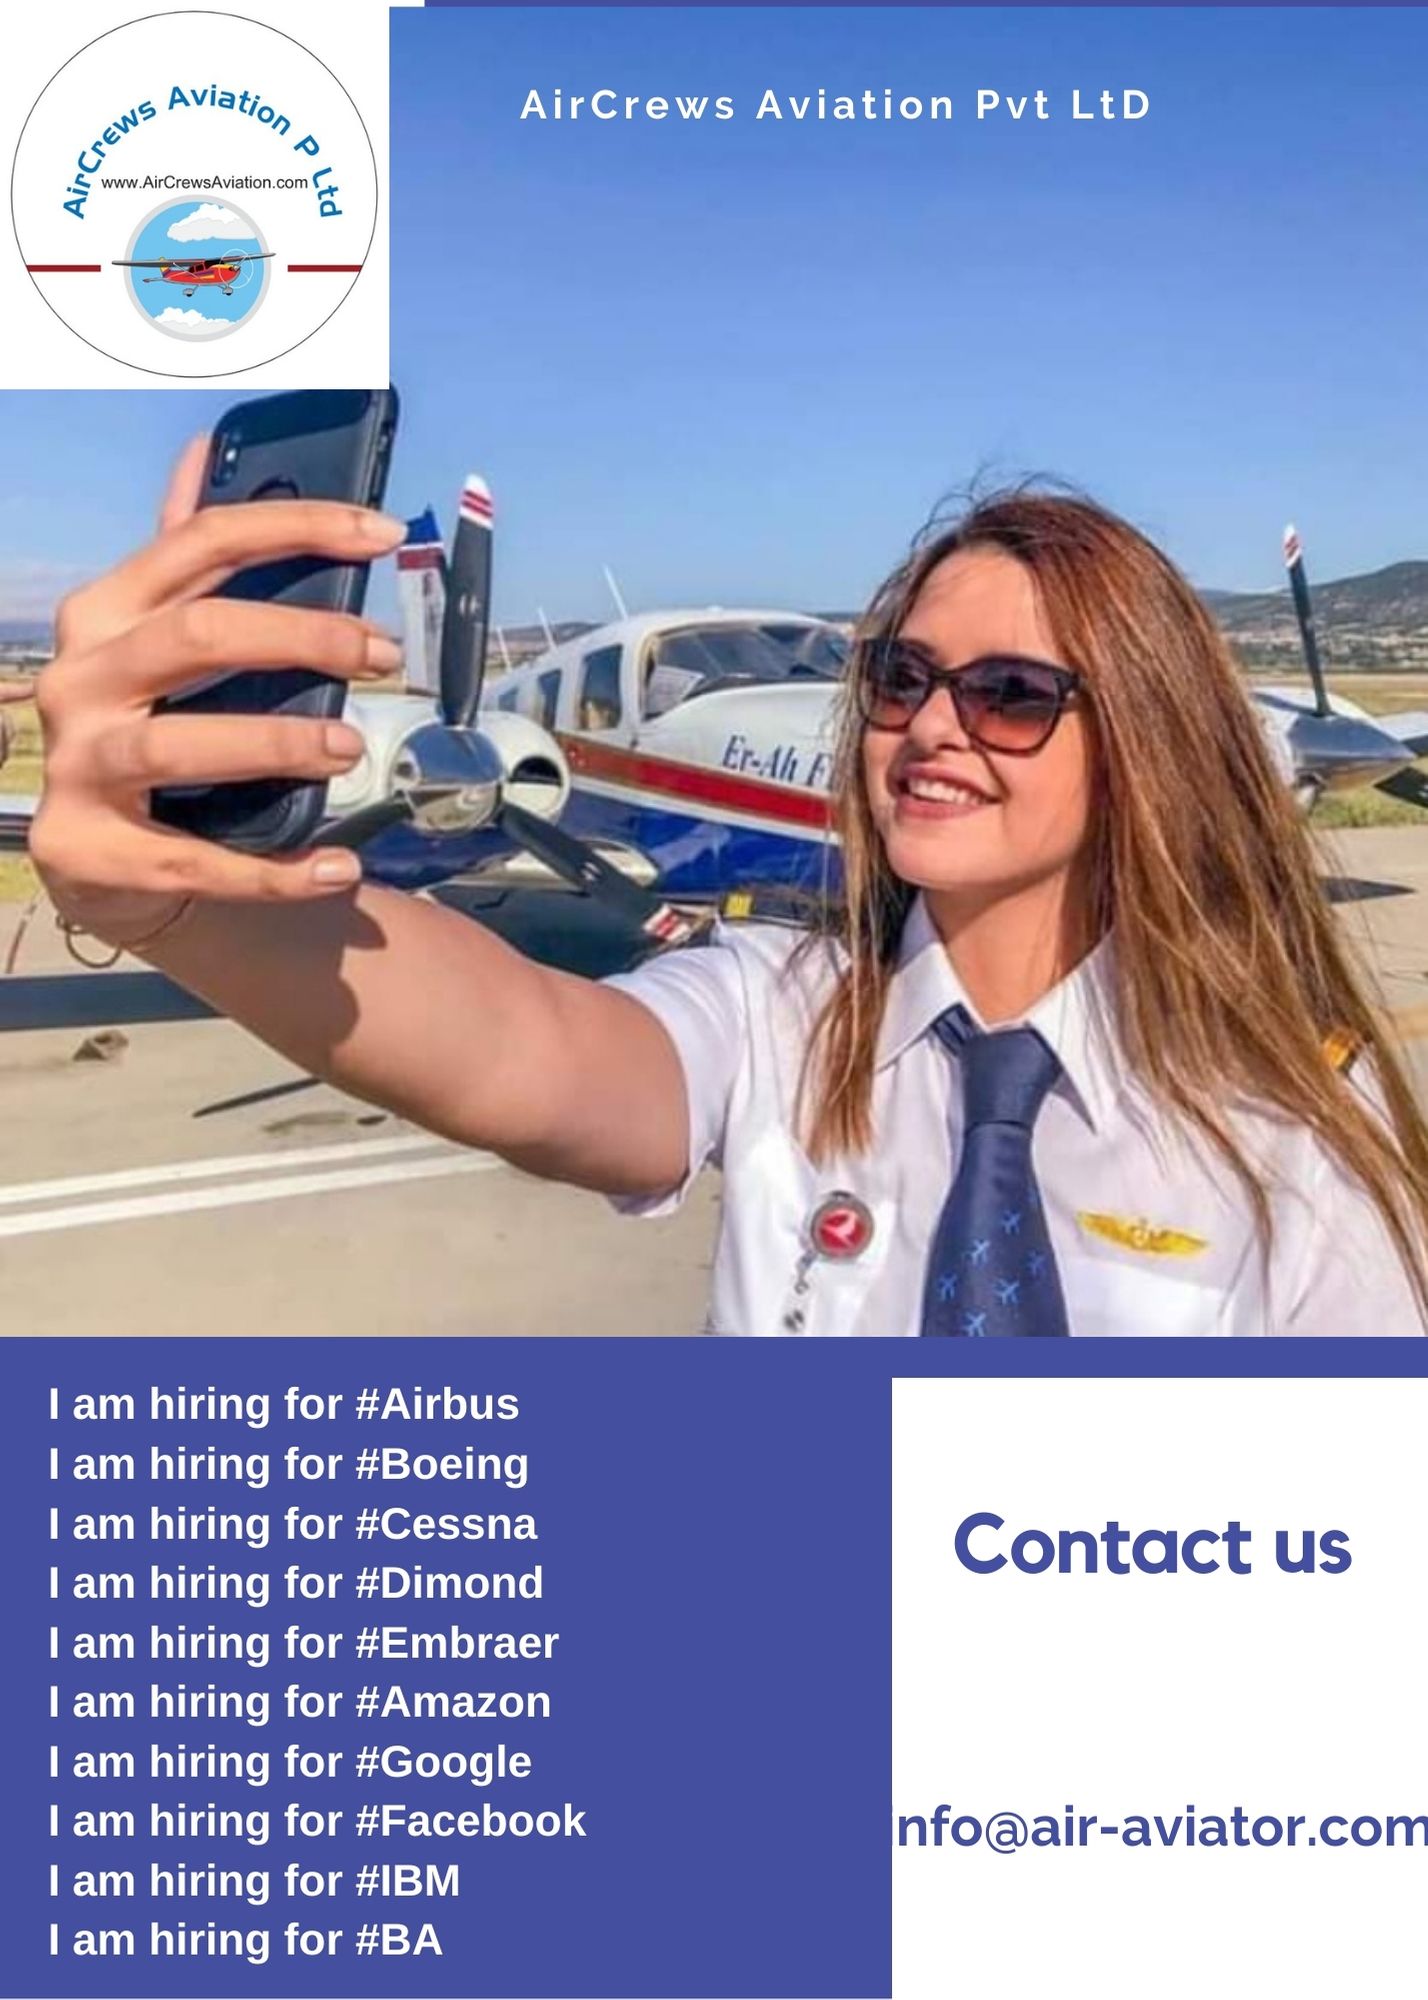 Internship Career at AirCrews Aviation Pvt Ltd